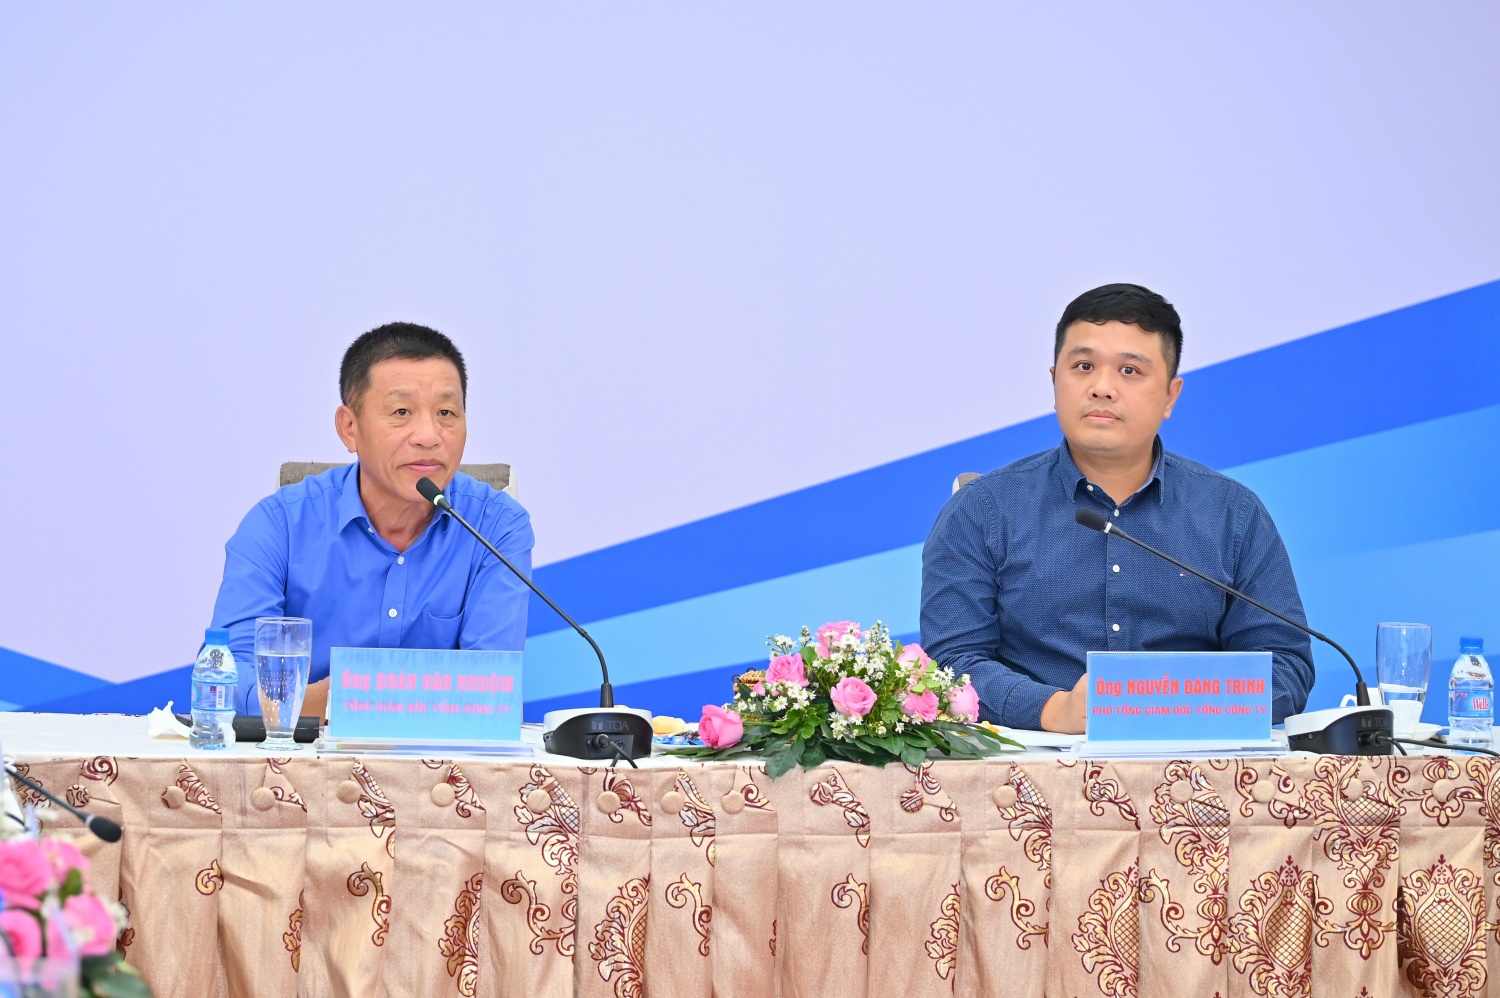 Ông Đoàn Văn Nhuộm – Tổng Giám đốc PVOIL, ông Nguyễn Đăng Trình – Phó Tổng Giám đốc PVOIL chủ trì Hội nghị